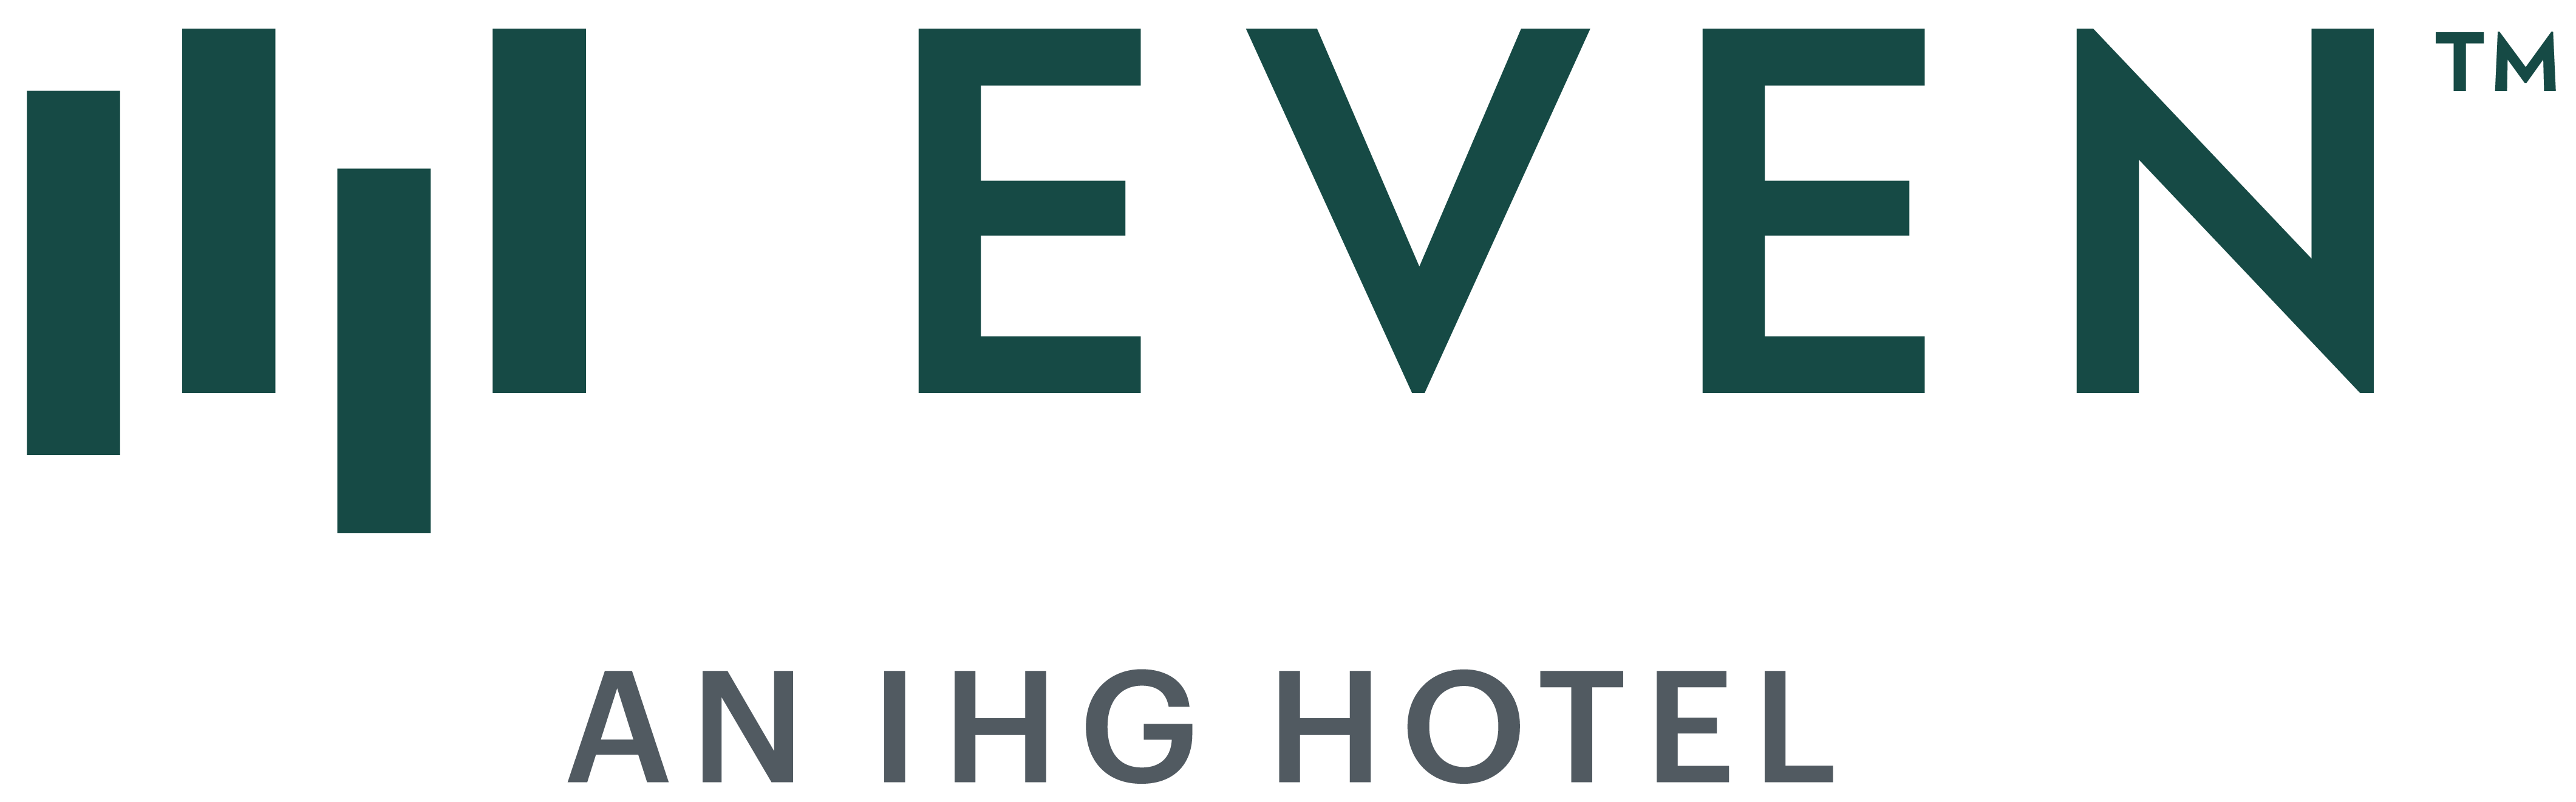 Evan Hotels